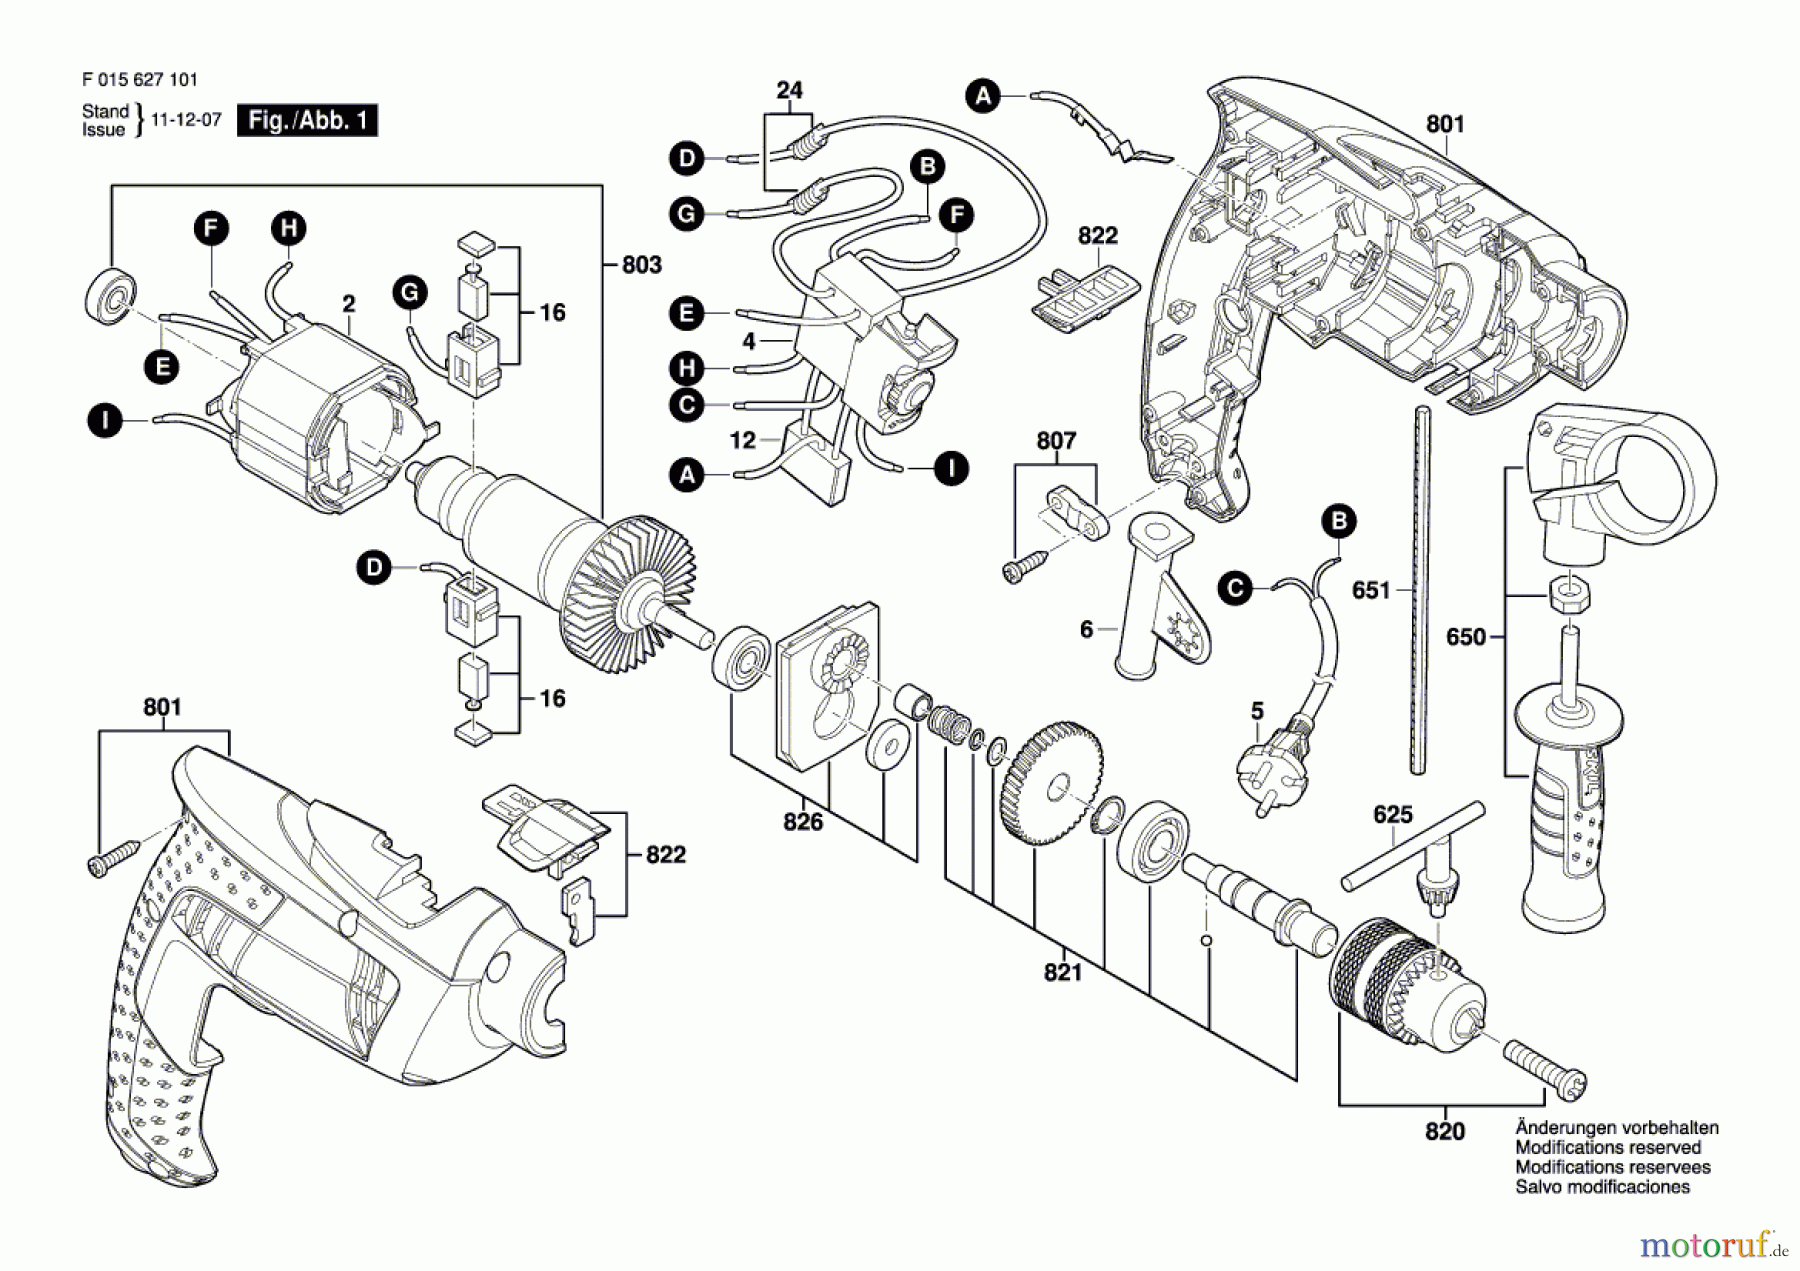  Bosch Werkzeug Schlagbohrmaschine 6271 Seite 1